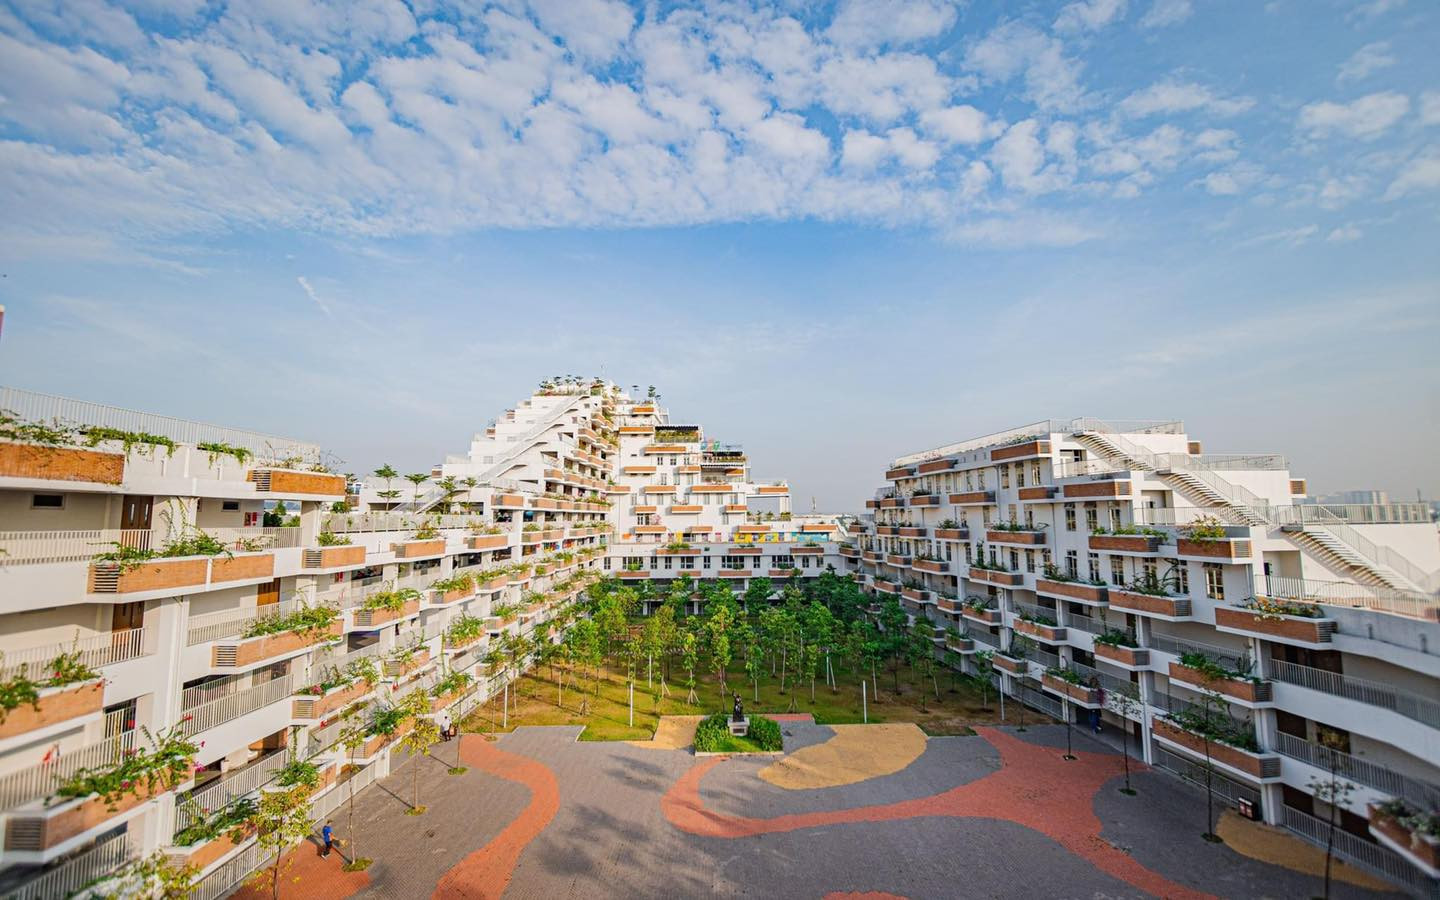 Kiến trúc xanh đầy cảm hứng của Đại học FPT TP.HCM - Trường Đại học FPT